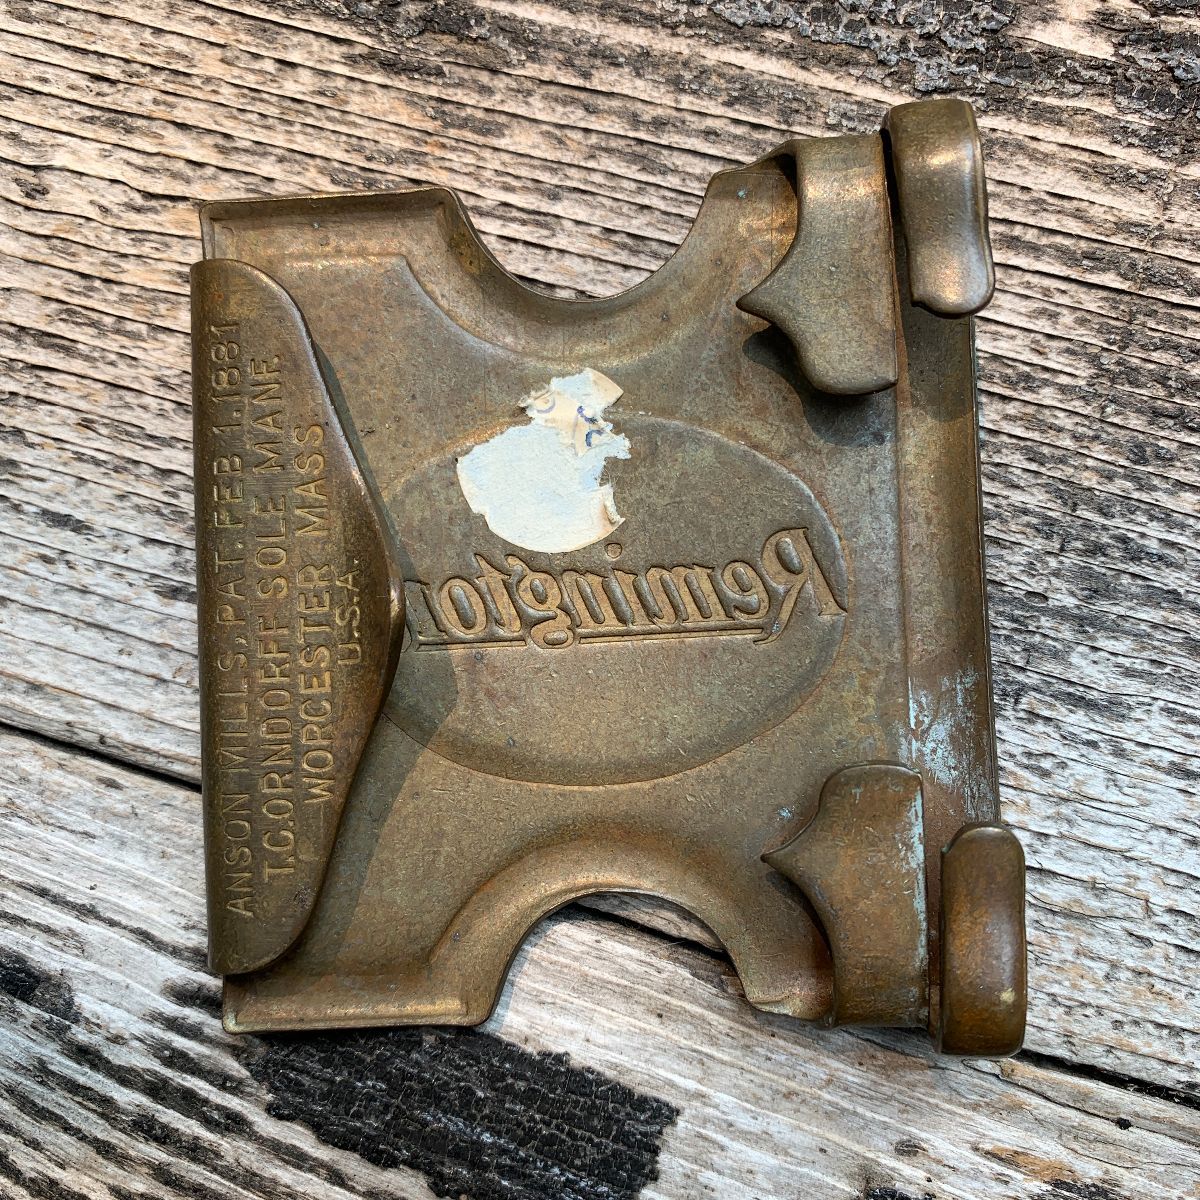 remington belt buckle